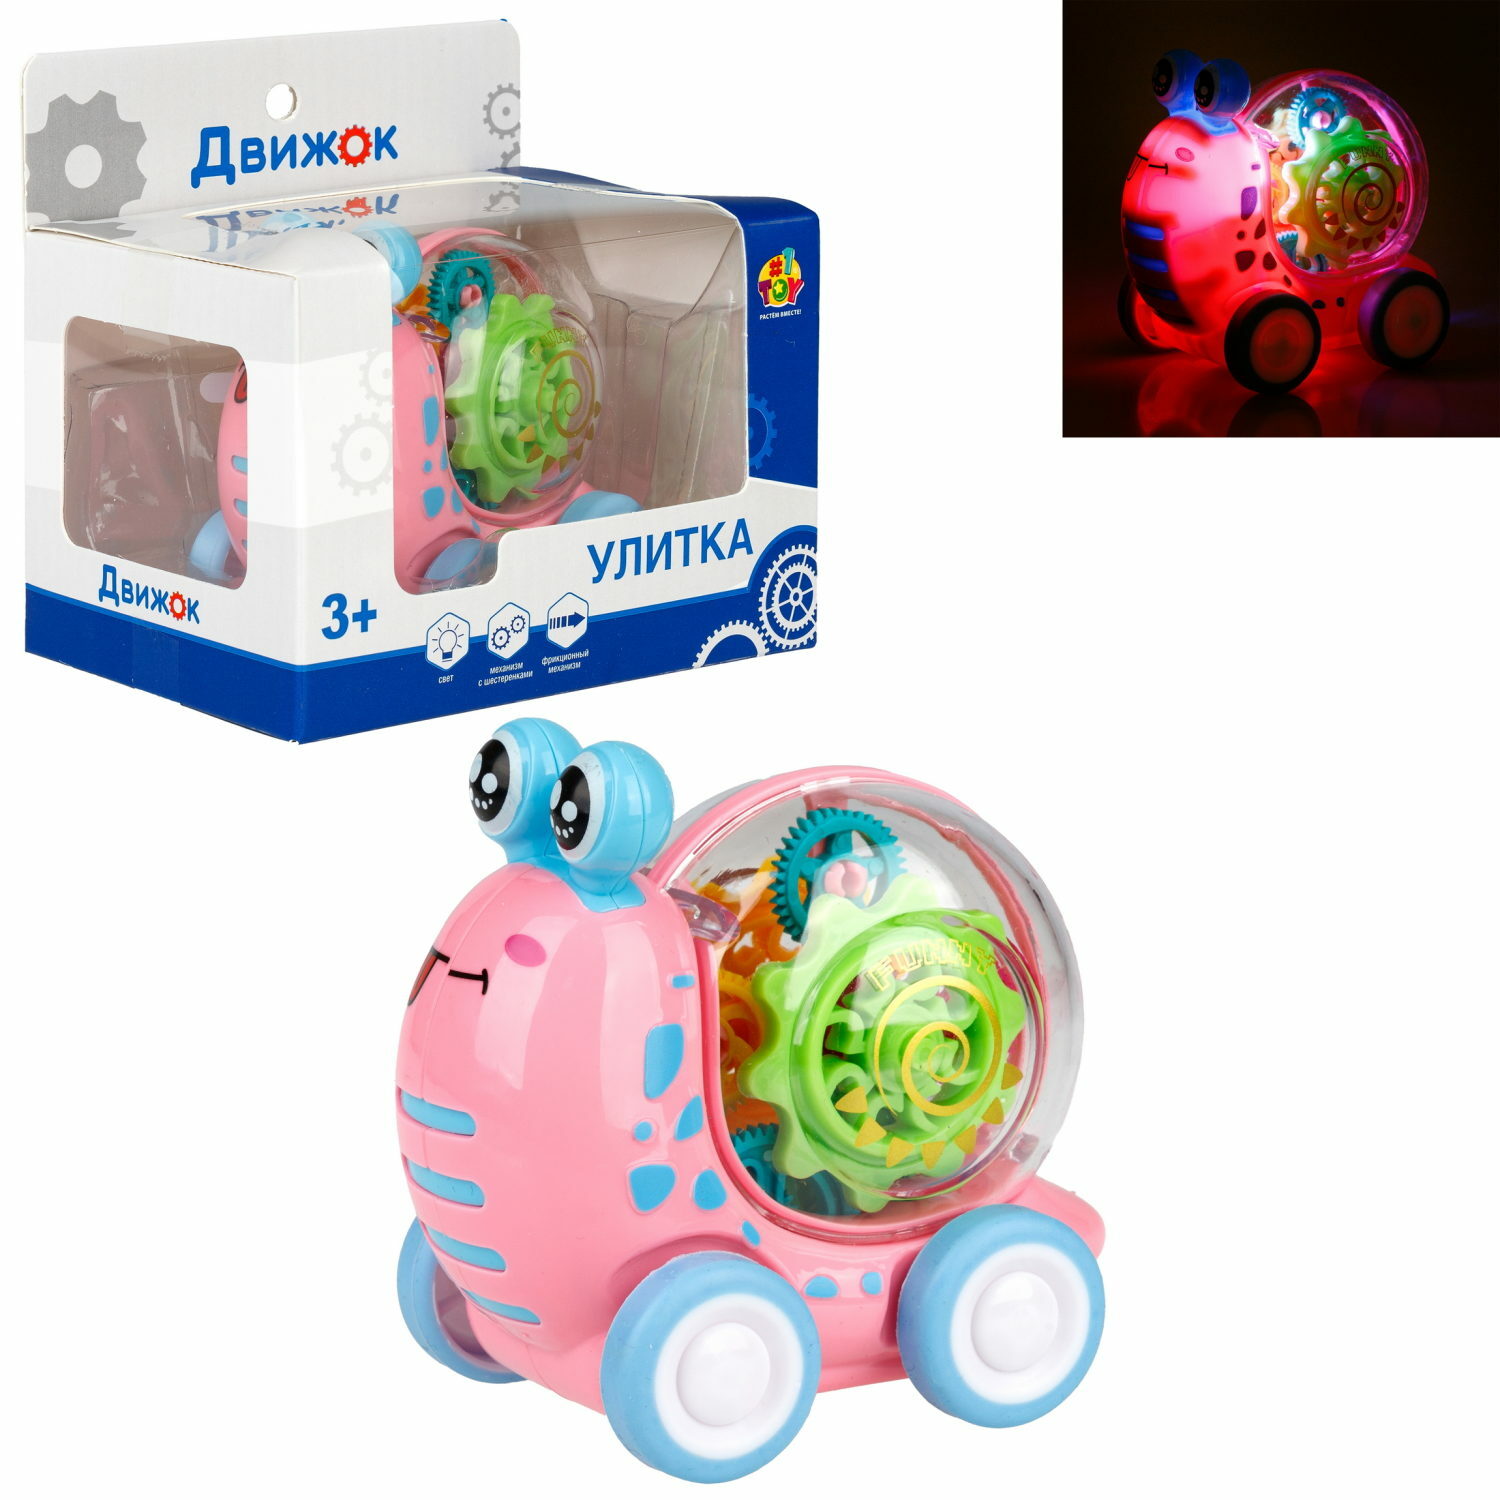 Интерактивная игрушка 1TOY Улитка прозрачная с световыми эффектами розовый - фото 3